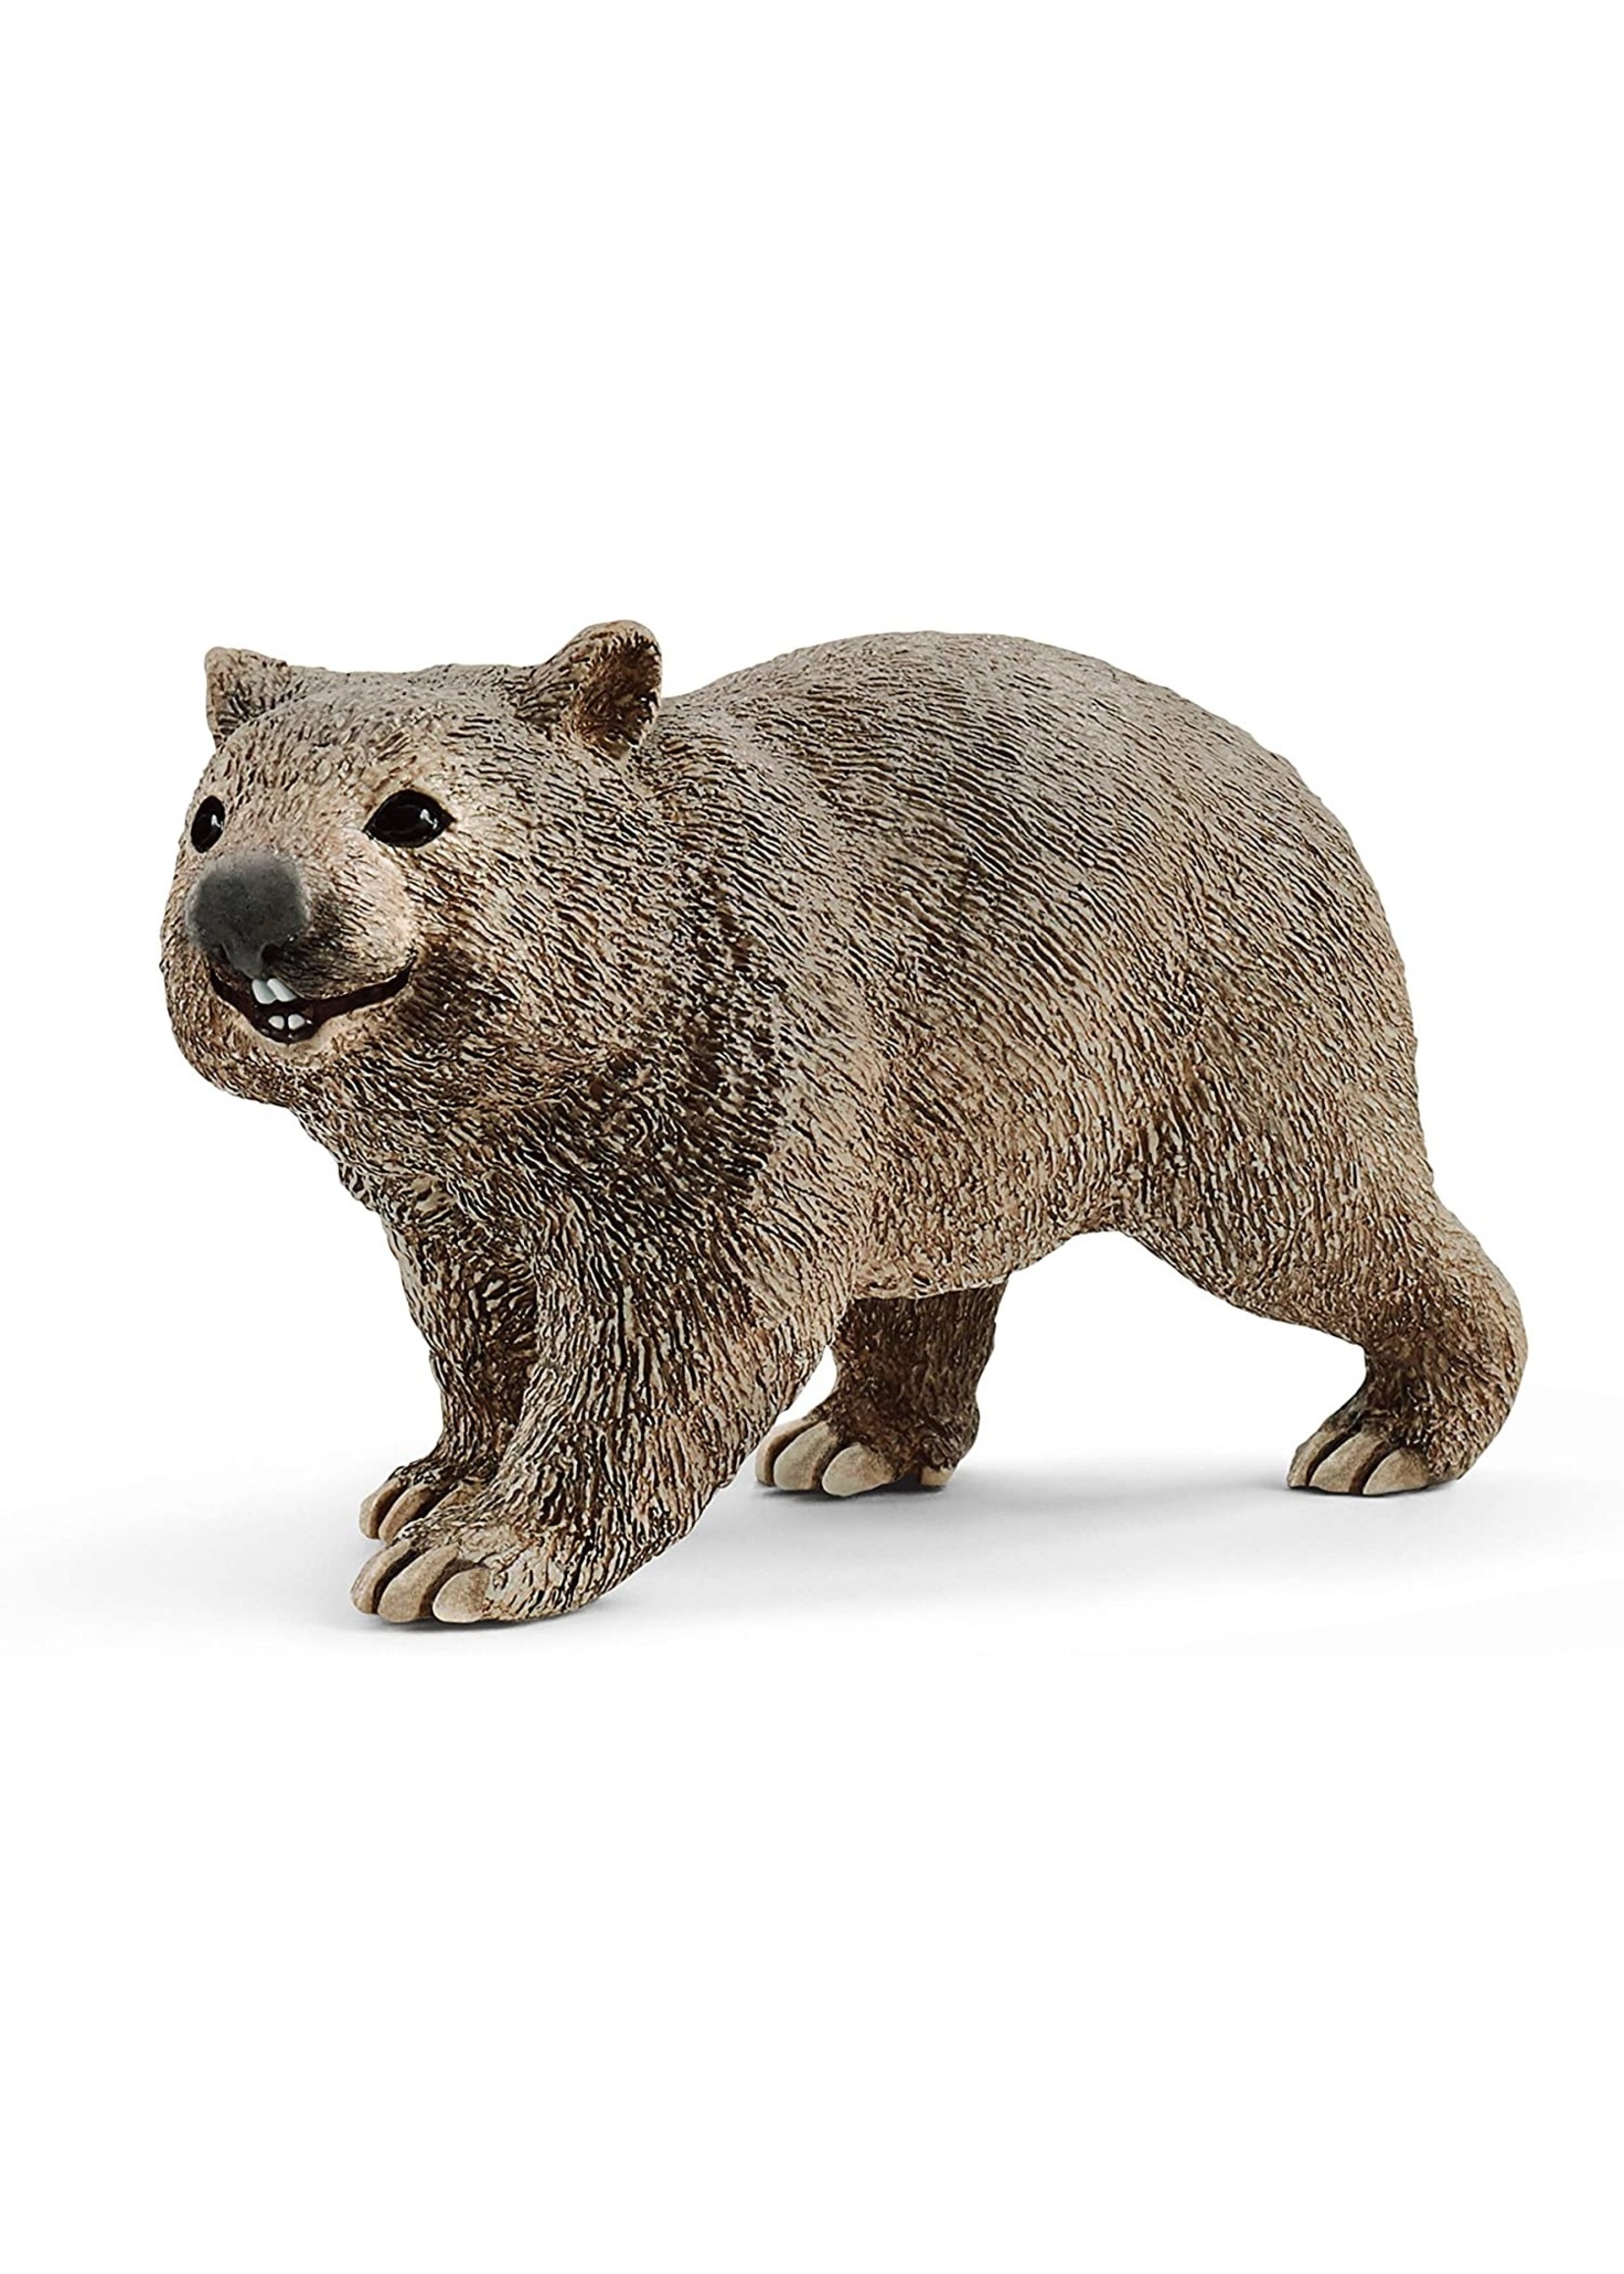 Schleich 14834 - Wombat